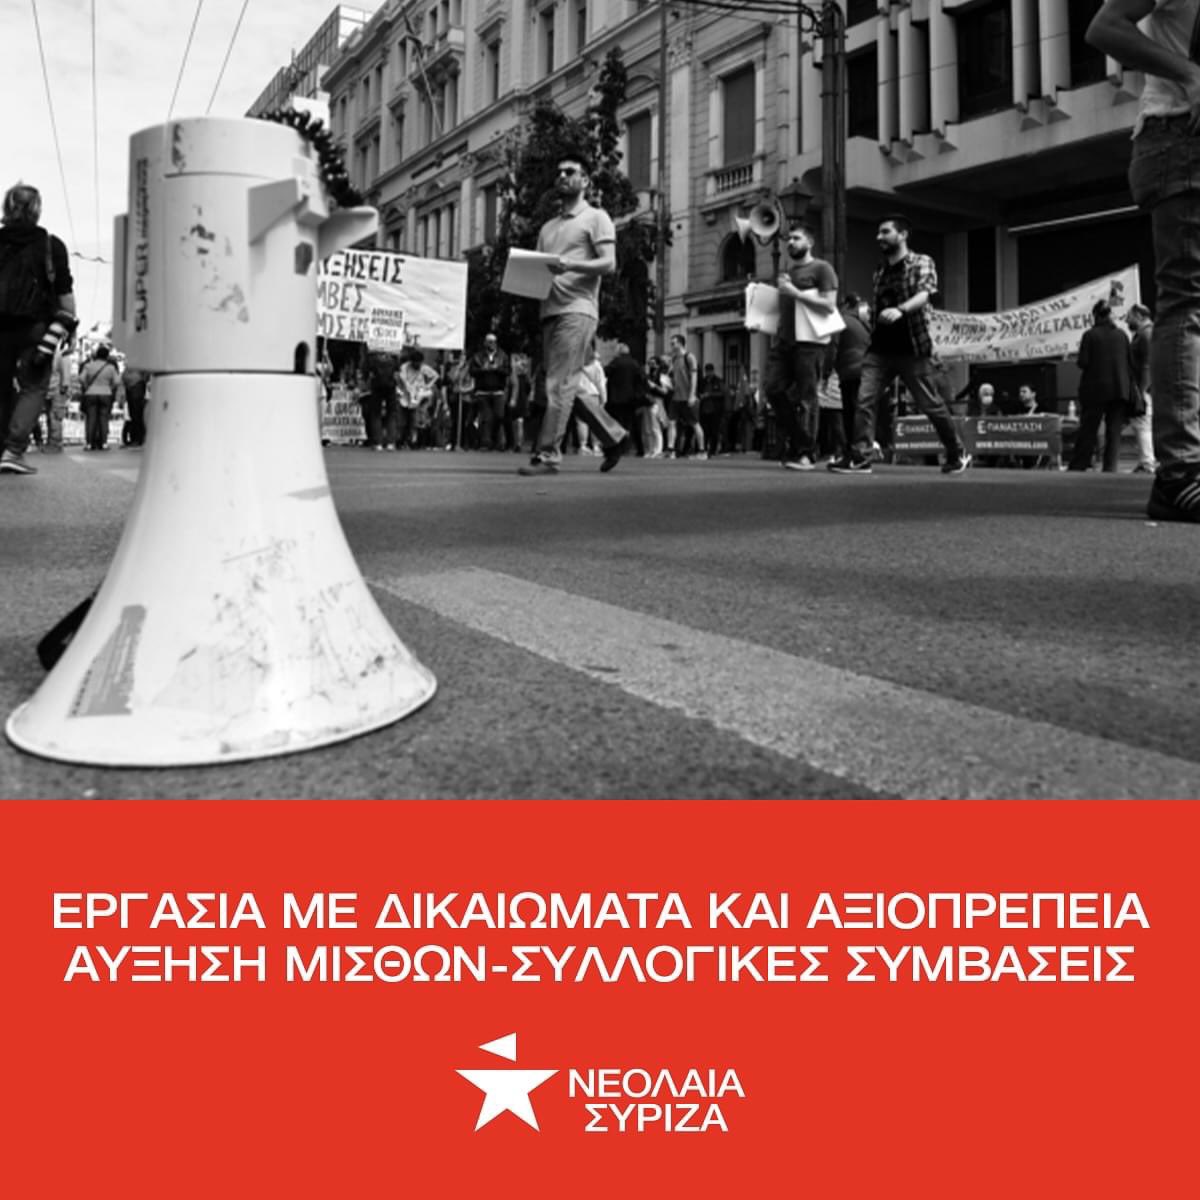 Διεκδικούμε δουλειές με δικαιώματα και ζωή με αξιοπρέπεια! 📍Πλατεία Κλαυθμώνος, Τετάρτη 17/4, 10:30. #απεργια